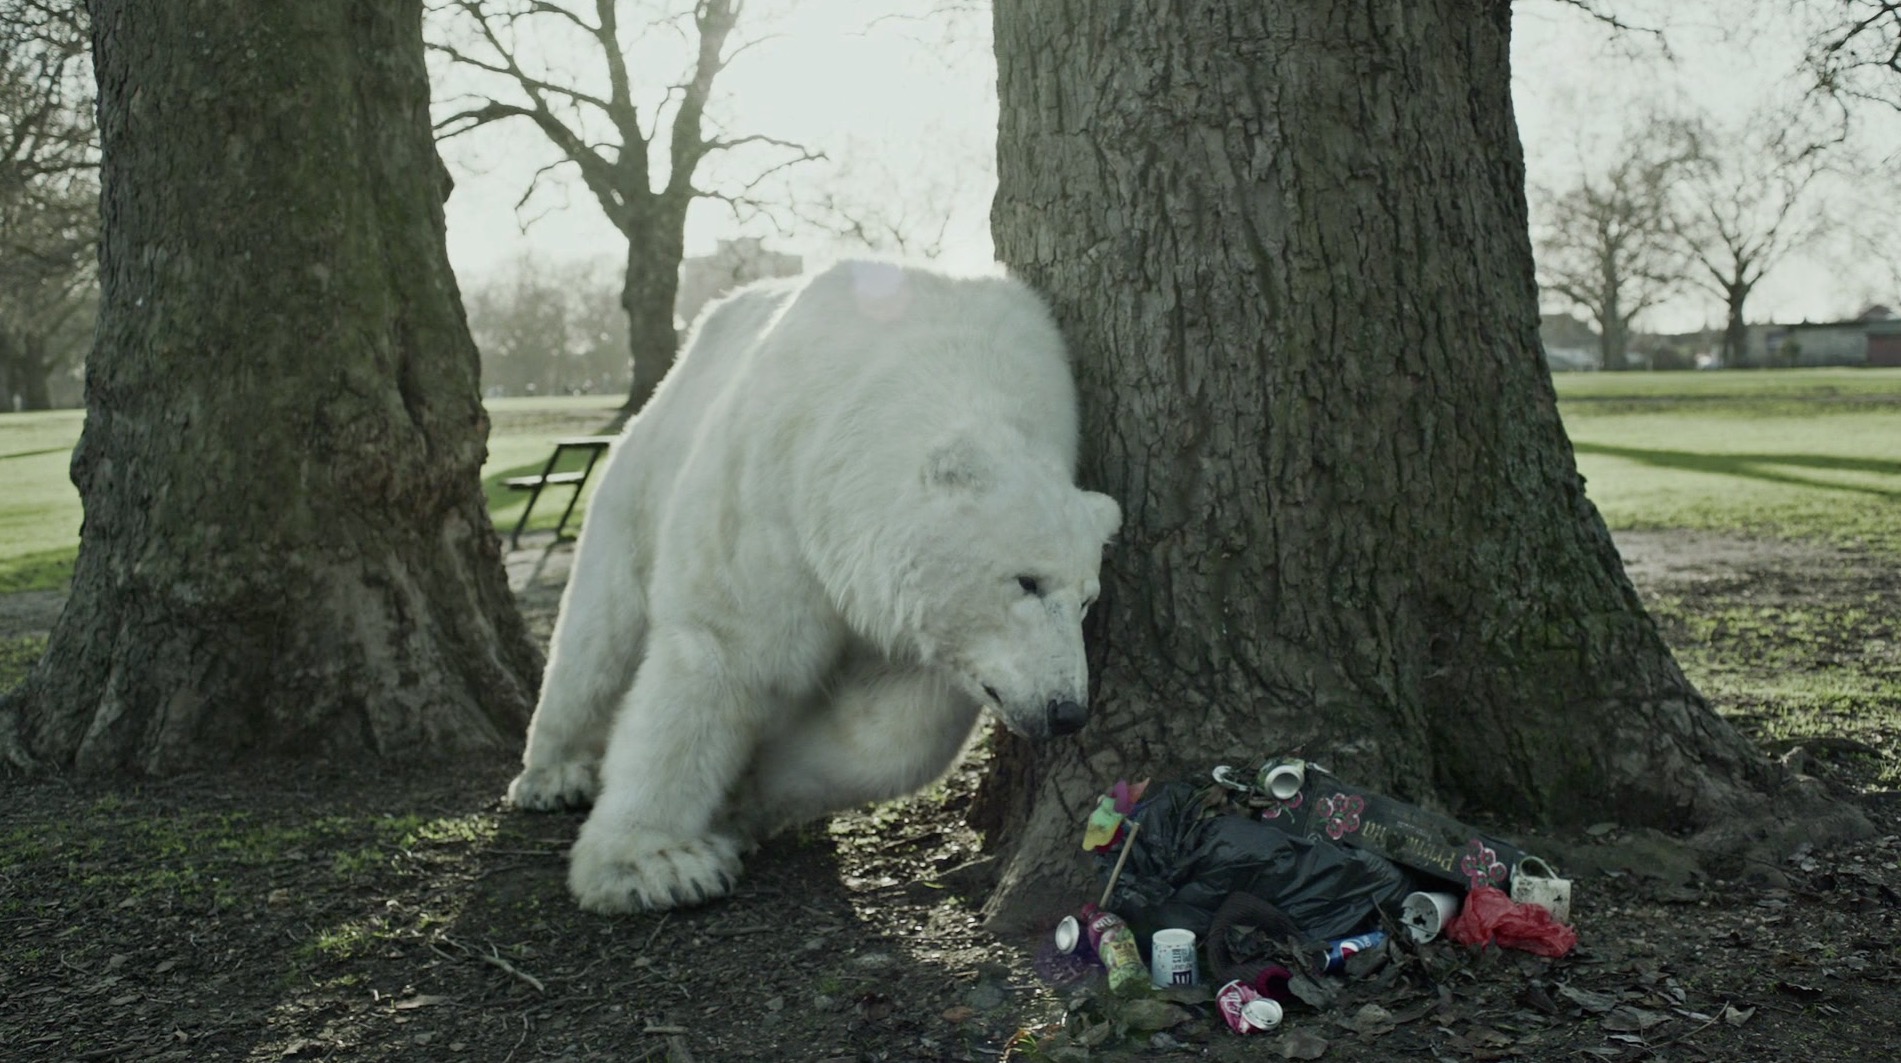 The Homeless Polar Bear